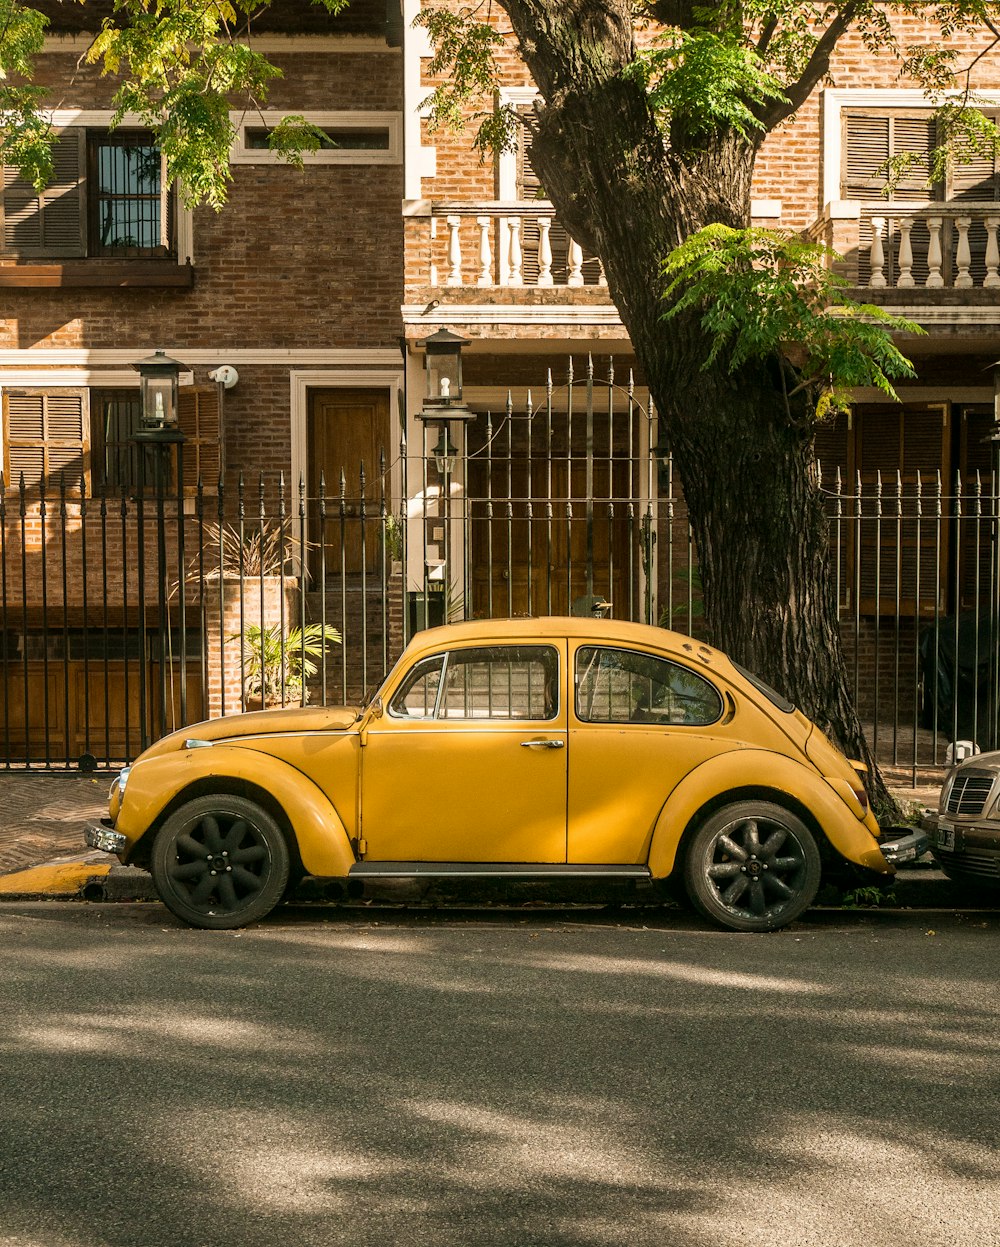 yellow volkswagen beetle parked beside brown brick building